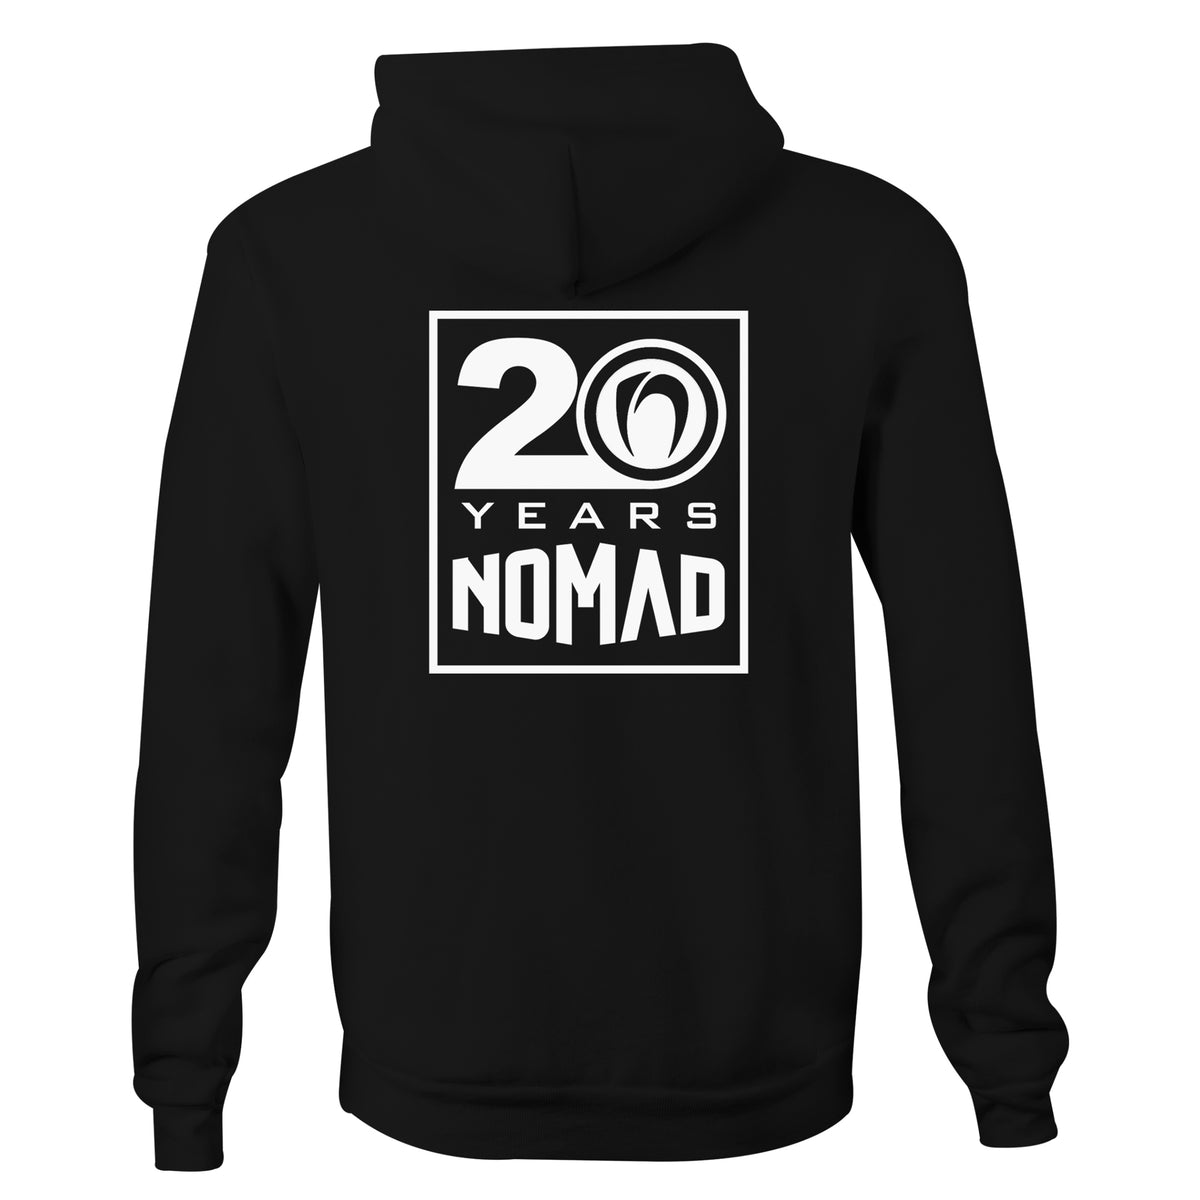 Nomad 20 Years Hood